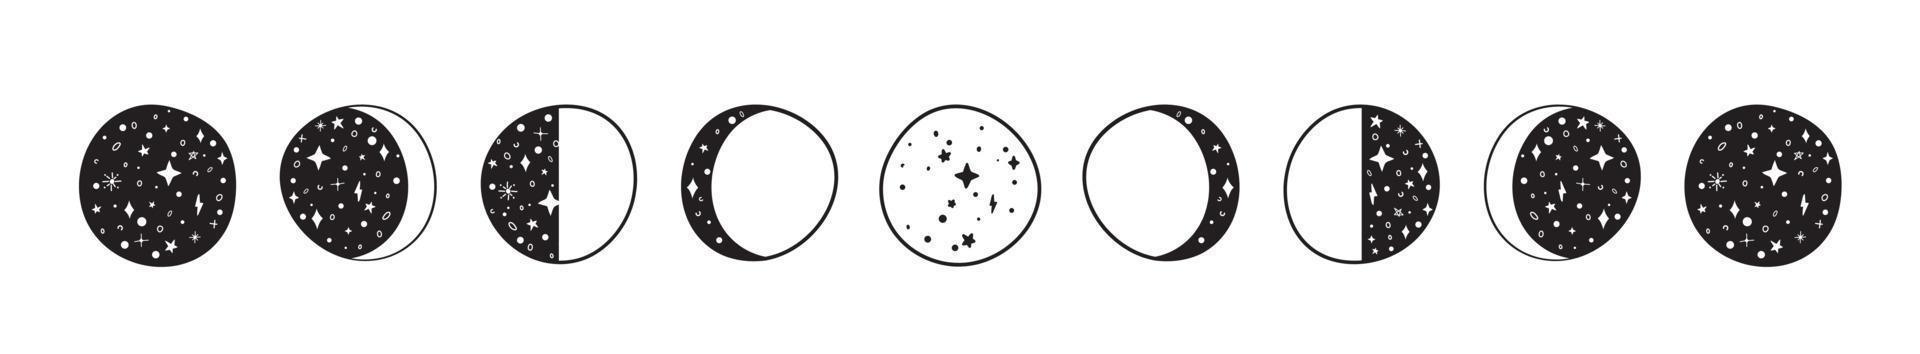 siluetas de fases lunares con estrellas. creciente, nuevo, lleno, superficie y eclipse. vector